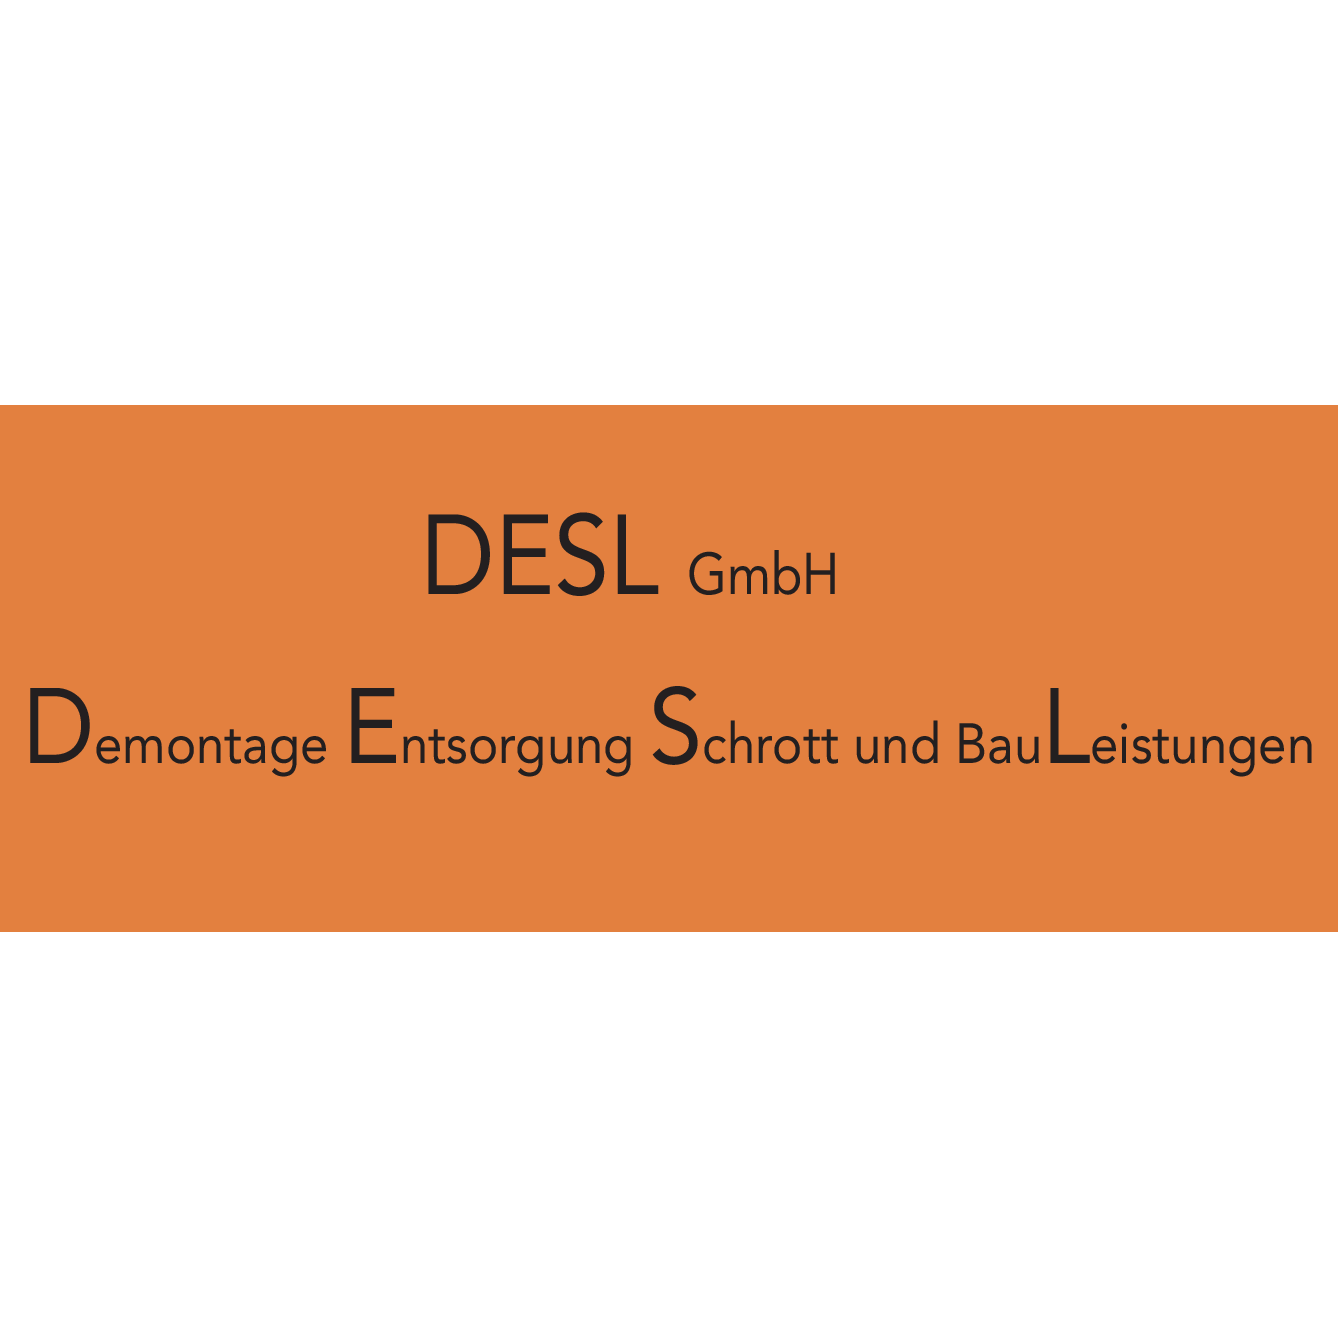 Desl GmbH Logo